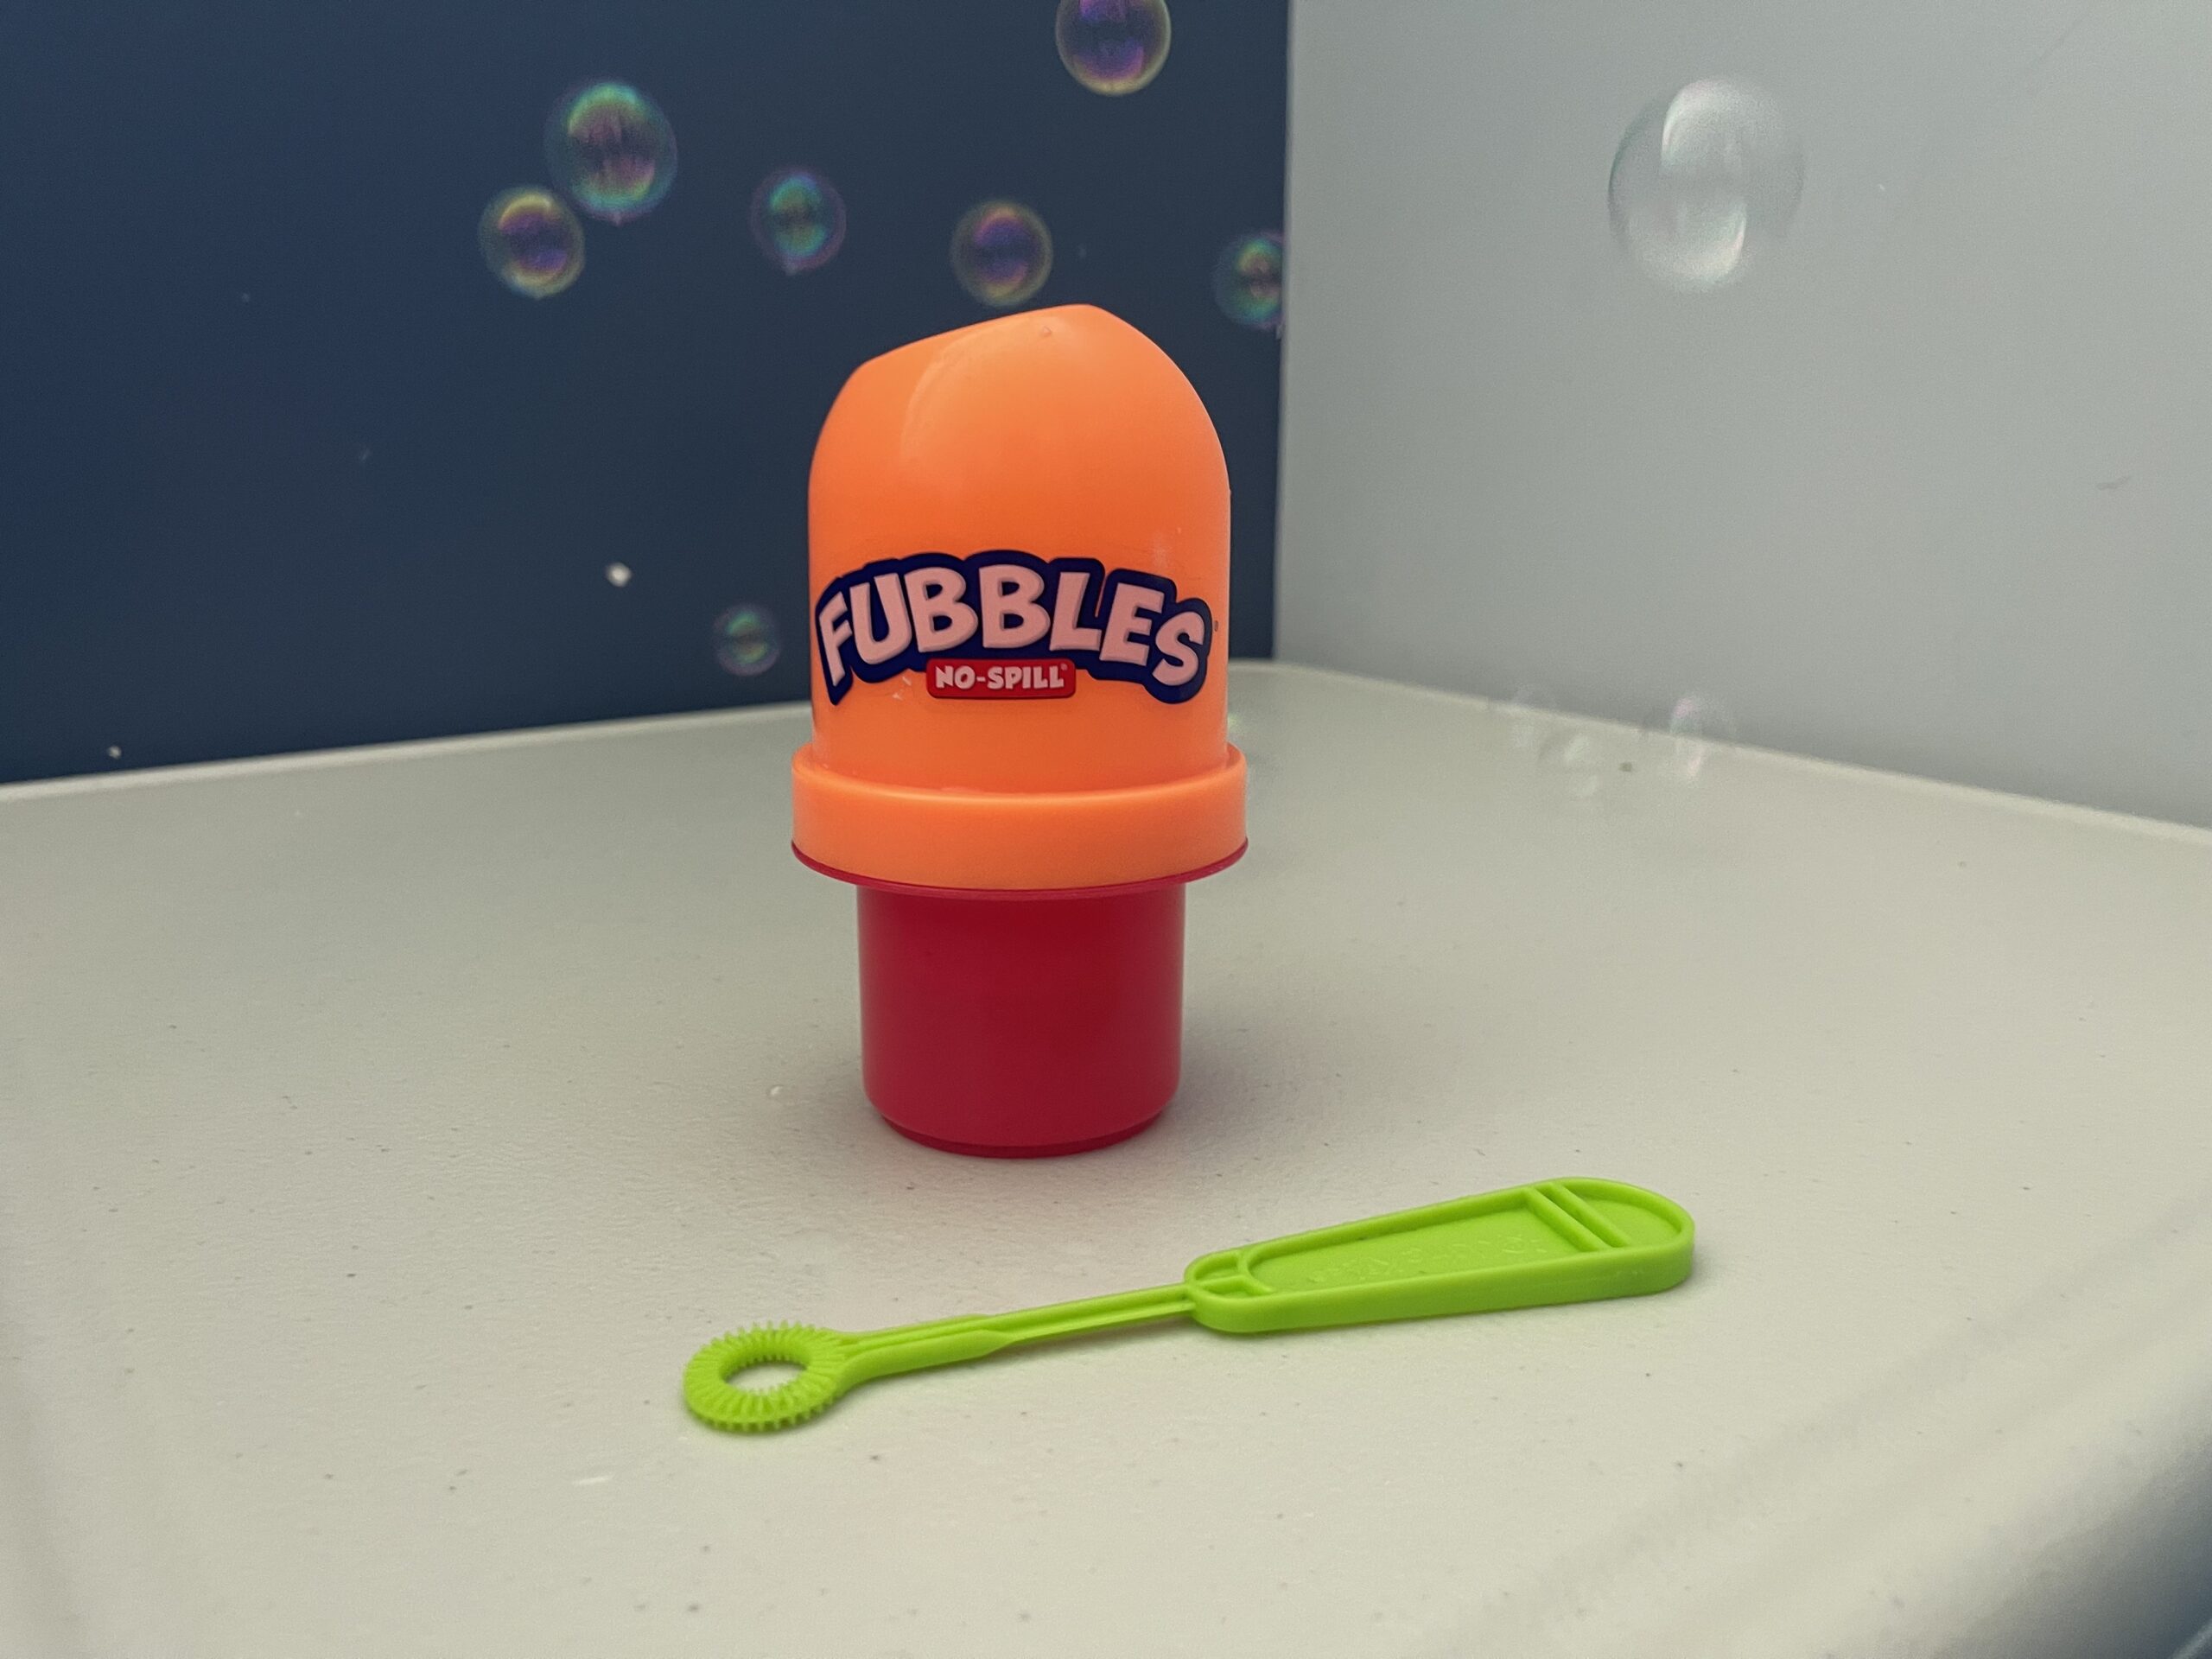 Fubbles bubbles on a table.